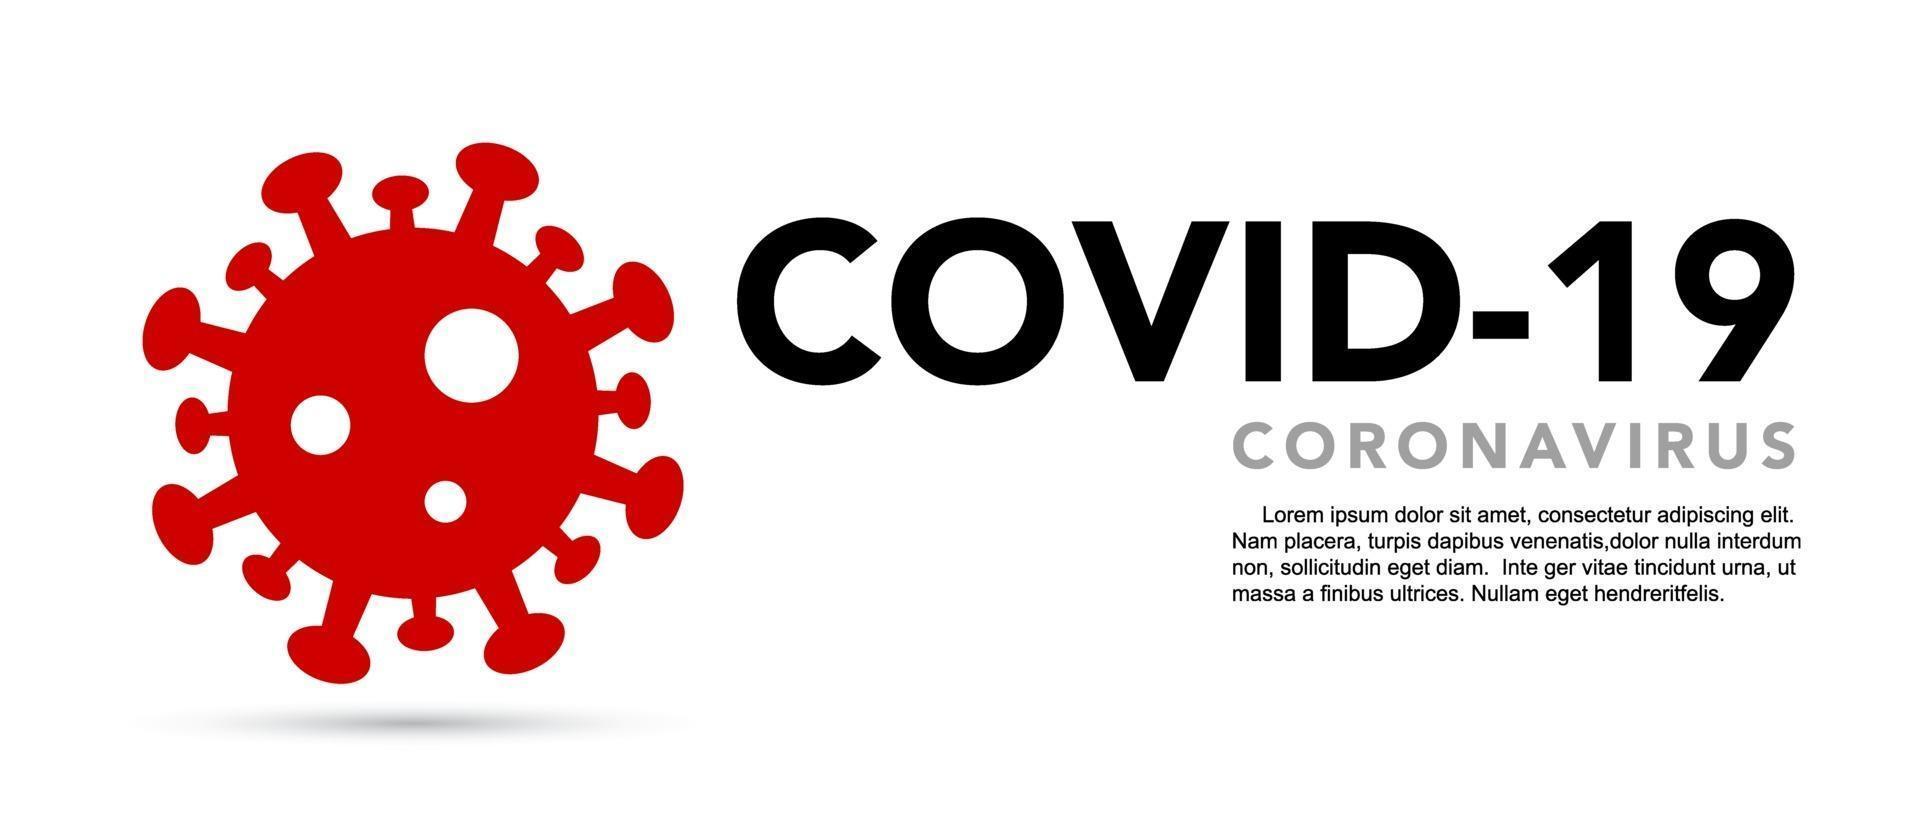 assinar cautela coronavírus. parar o banner do coronavírus. vetor